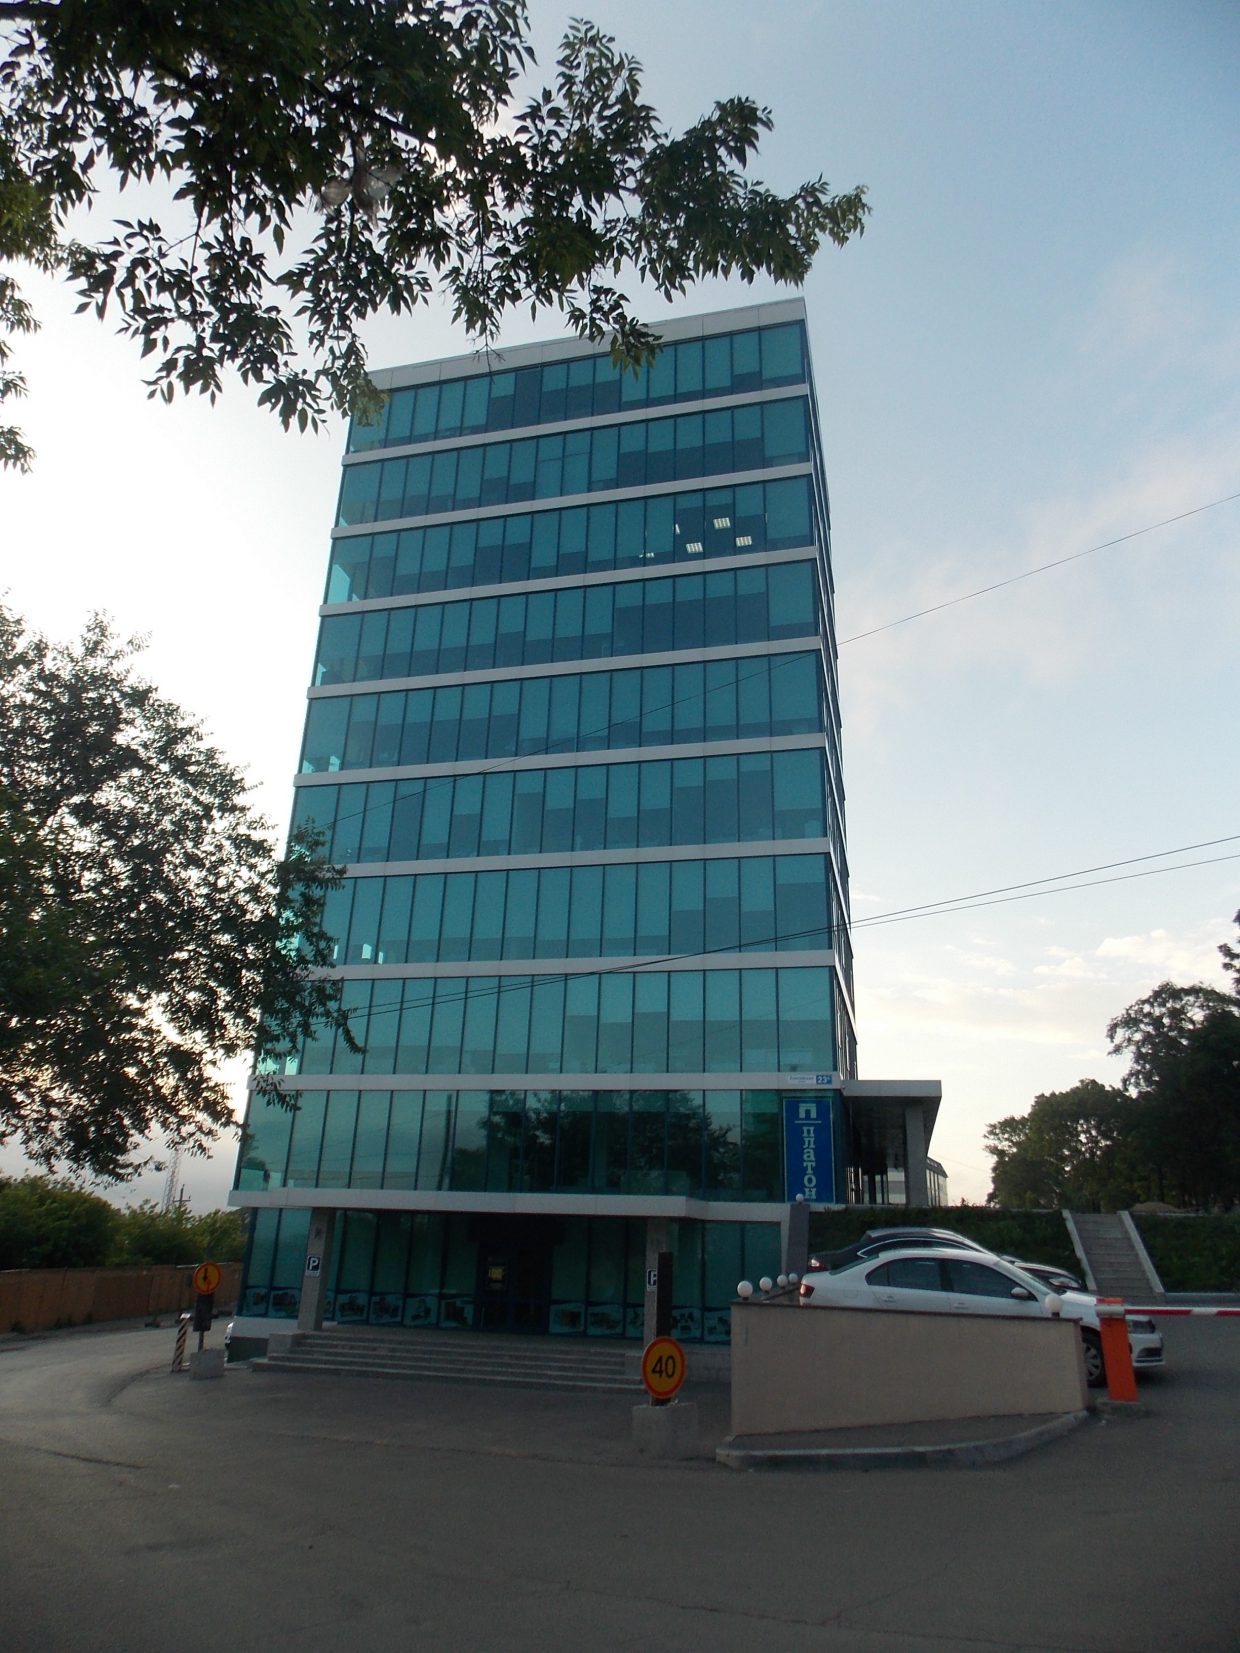 Административно-гостиничный комплекс расположен по адресу ул. Енисейская,7 в г. Владивостоке